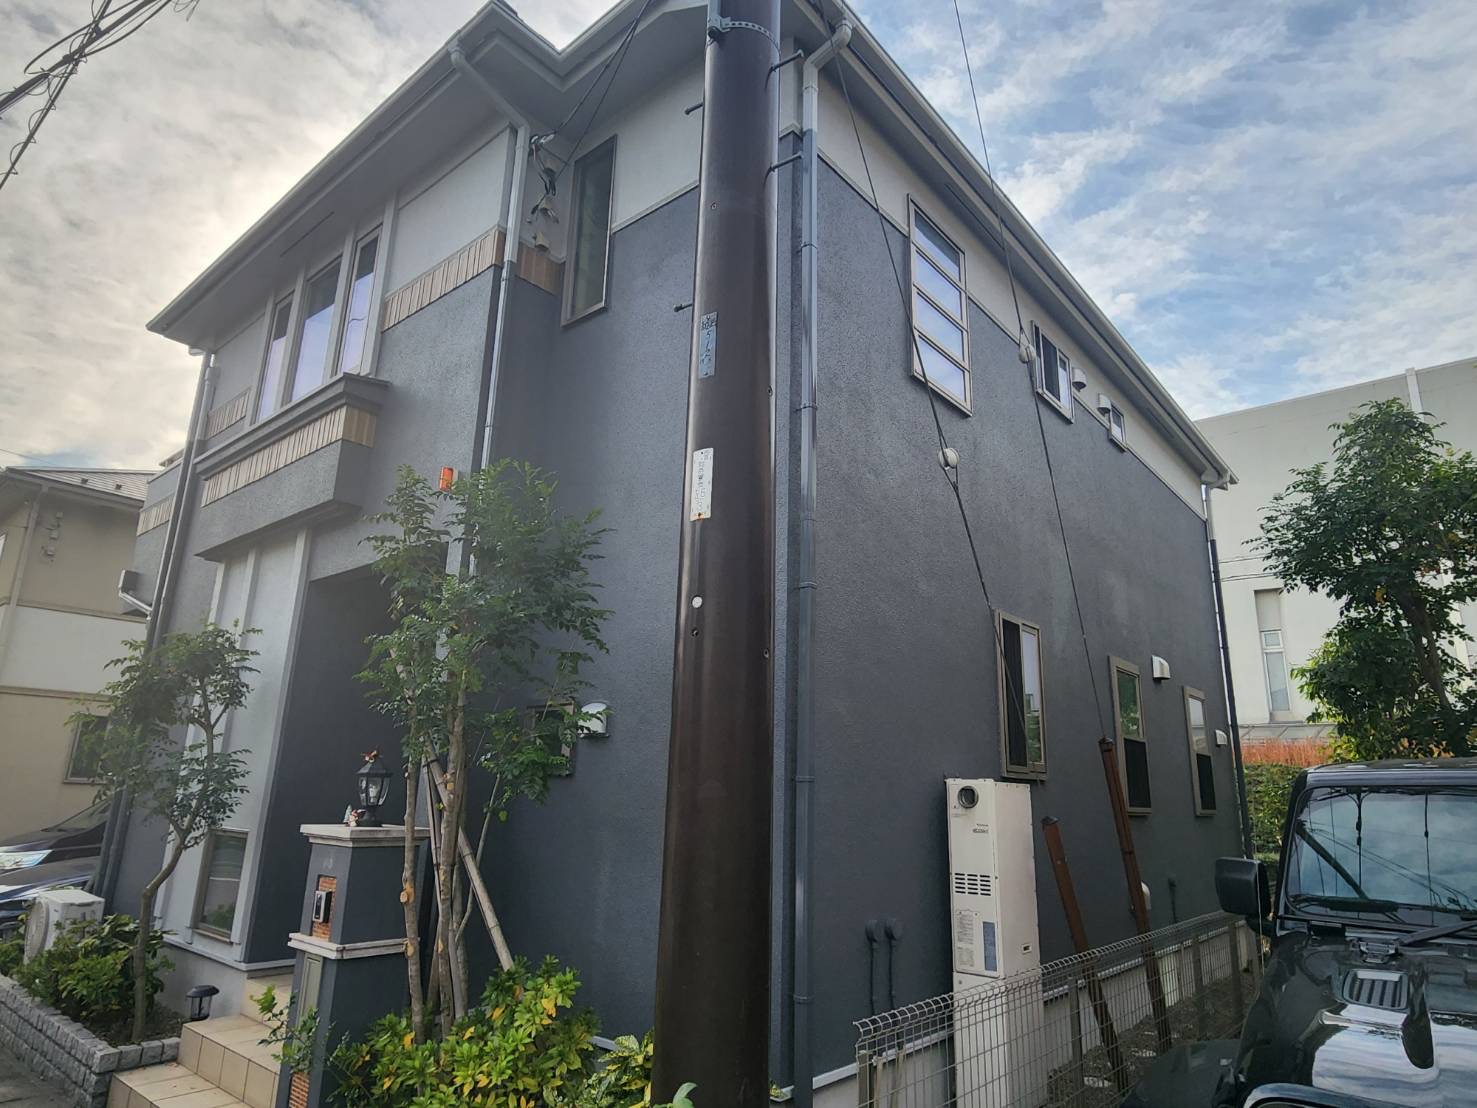 千葉市中央区 K様邸屋根・外壁塗装工事 日本リネスタイル|千葉市中央区|リフォーム|リノベーション|屋根外壁塗装|内装外構工事